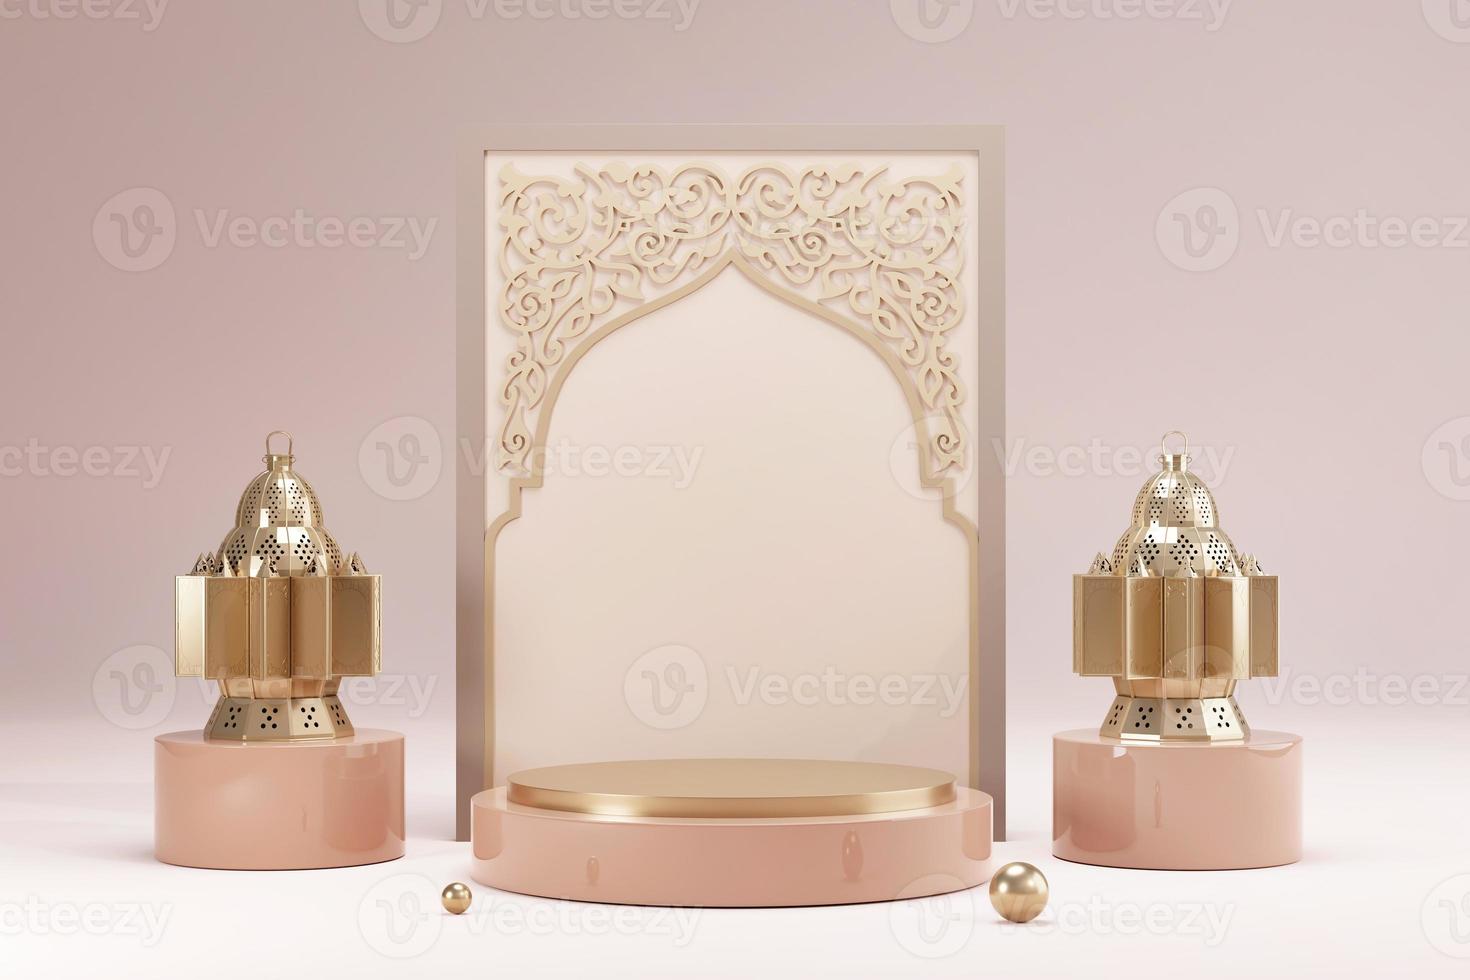 fundo de saudação islâmico ramadan kareem com lua crescente dourada 3d realista e lanterna. cartão de saudação de design criativo, banner, pôster. feriado sagrado islâmico tradicional, renderização em 3d foto